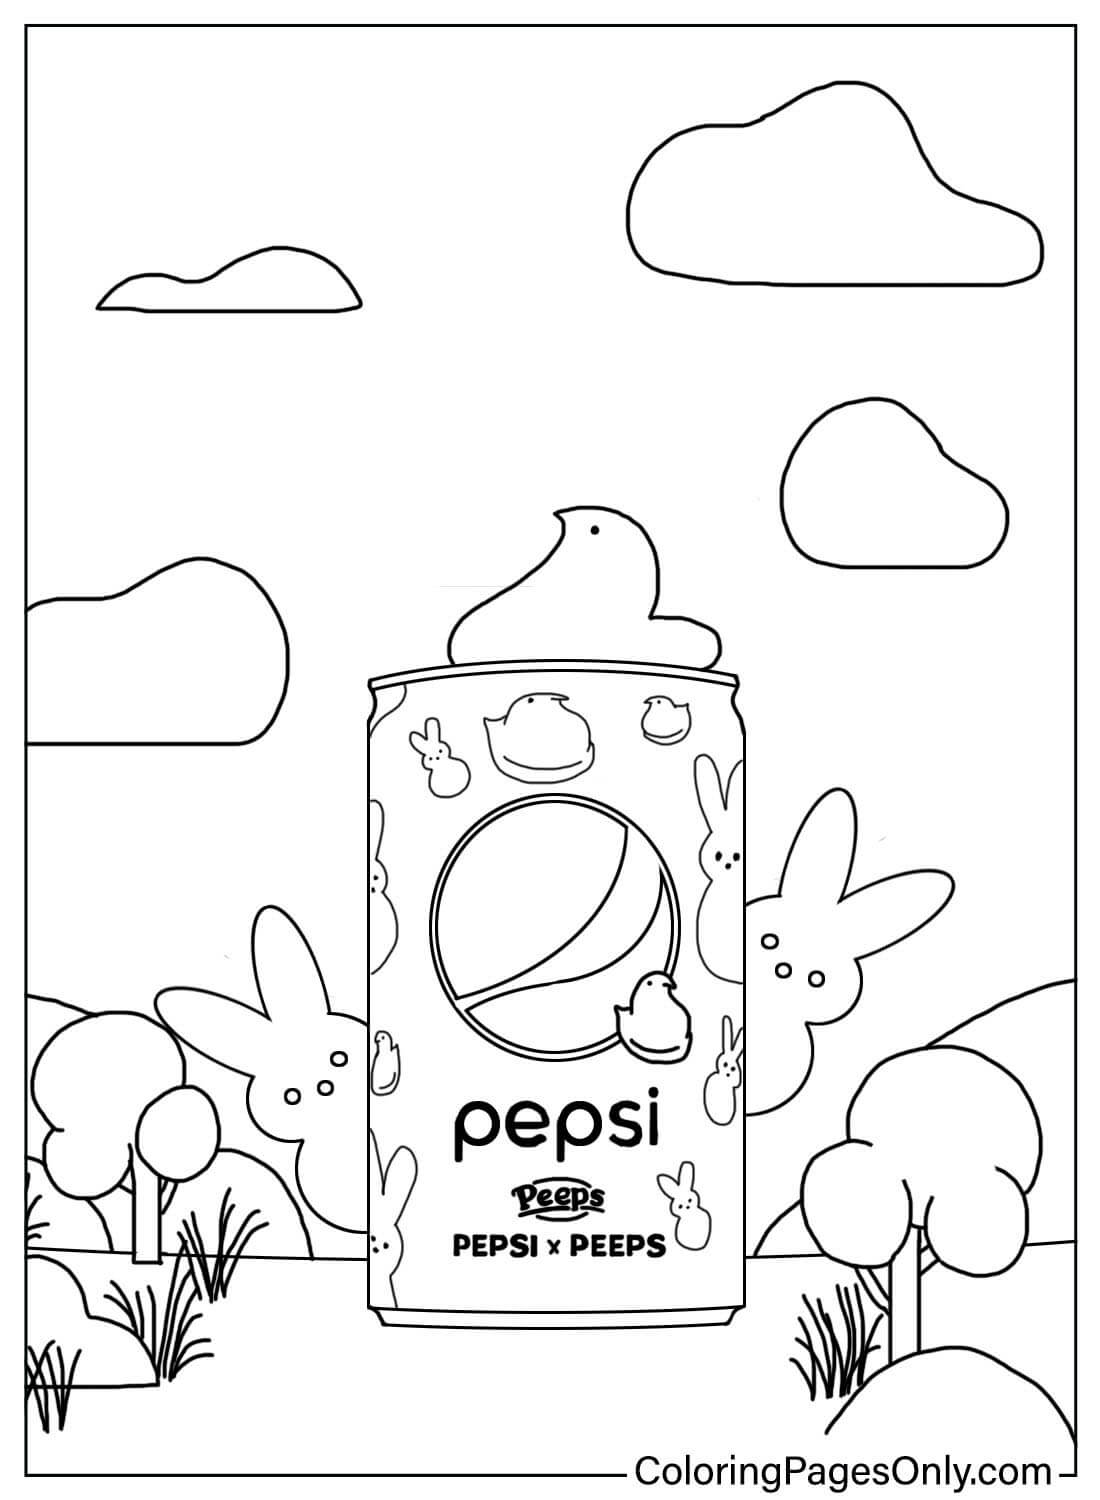 Пипс и Пепси от Peeps